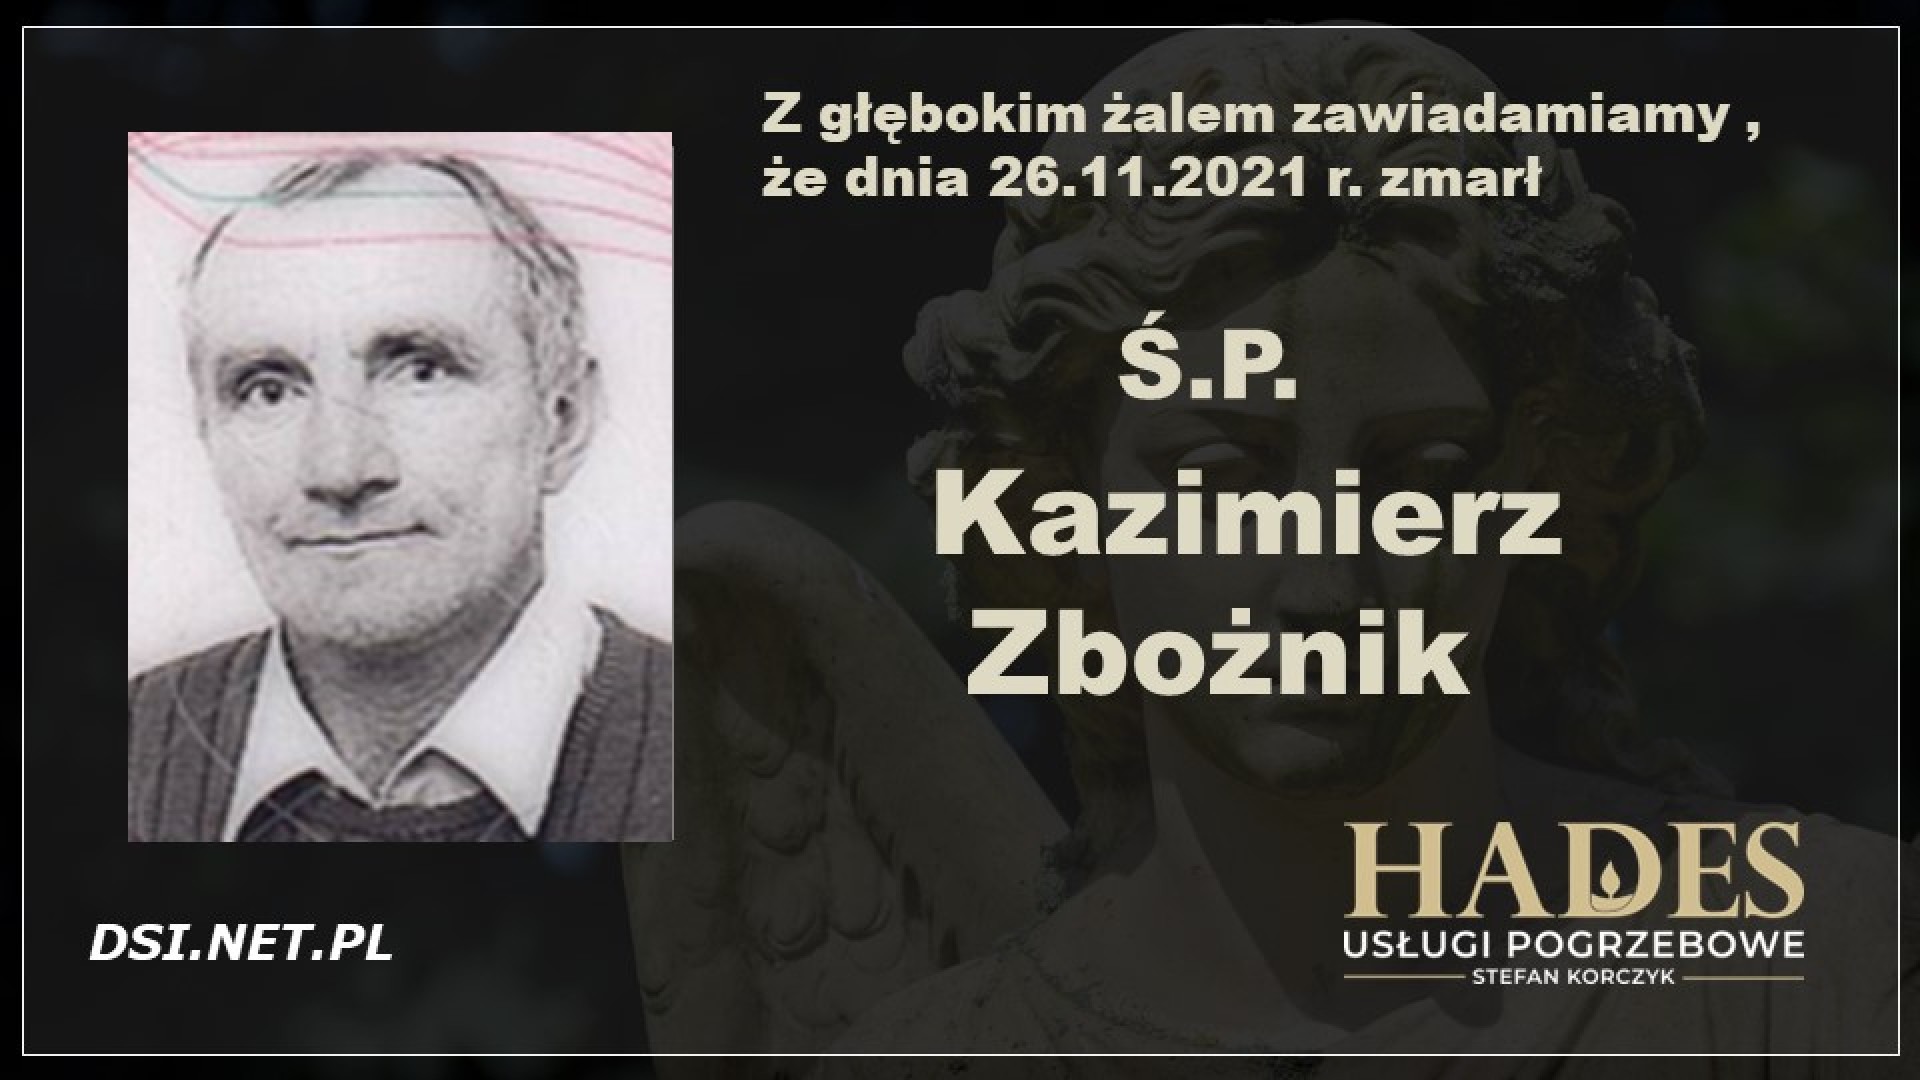 Ś.P. Kazimierz Zbożnik